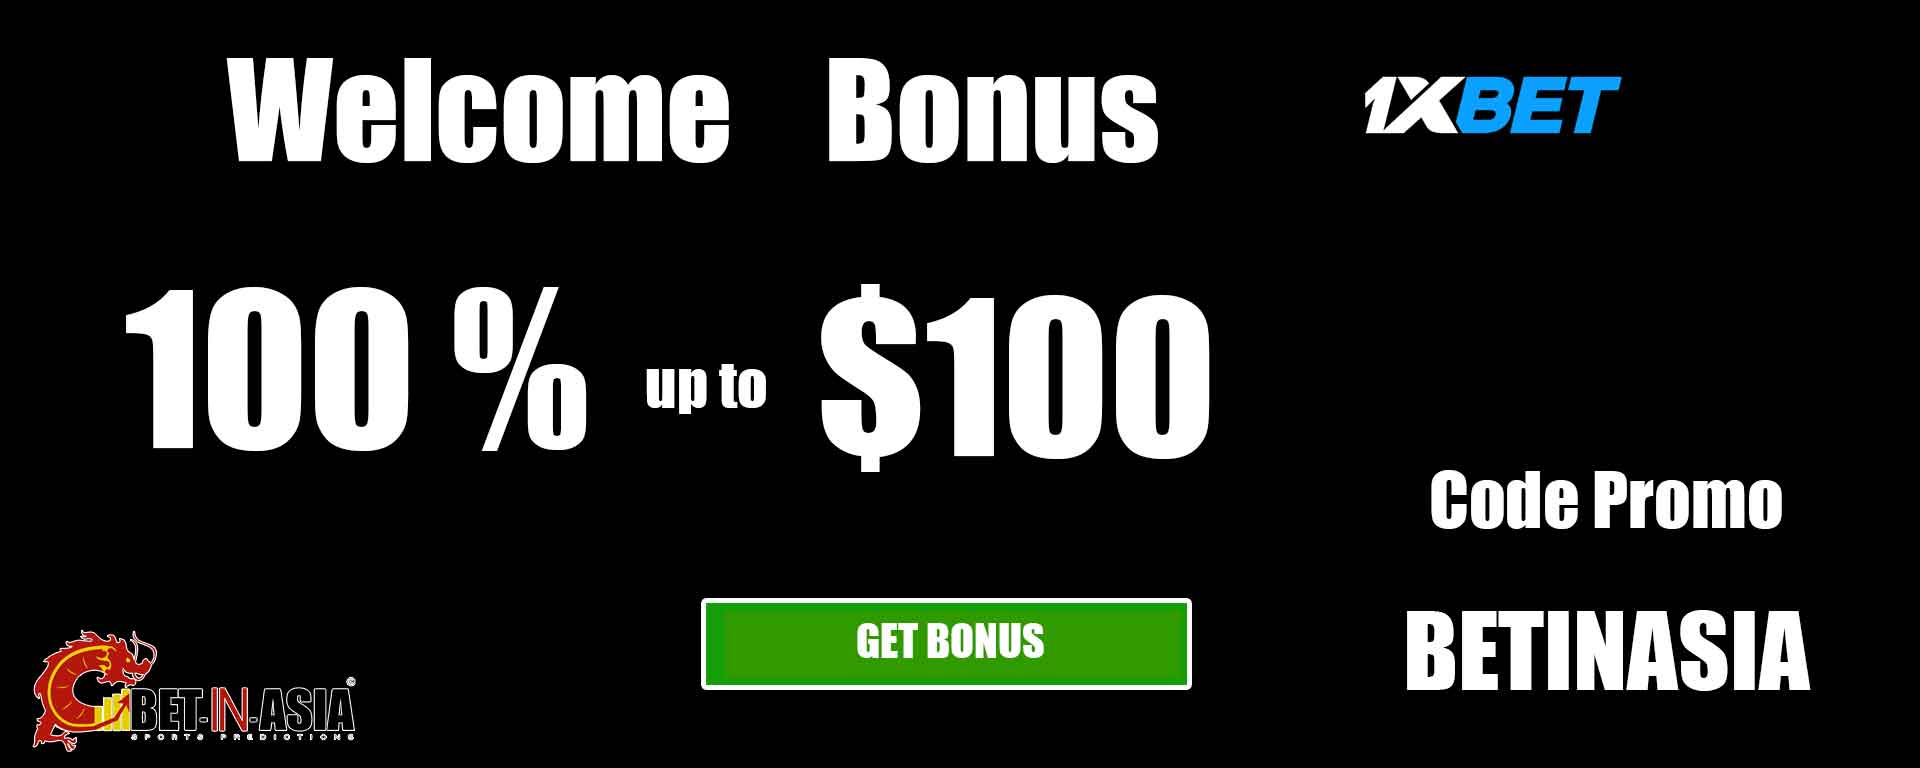 1xbet welcome bonus 100 % on first deposit